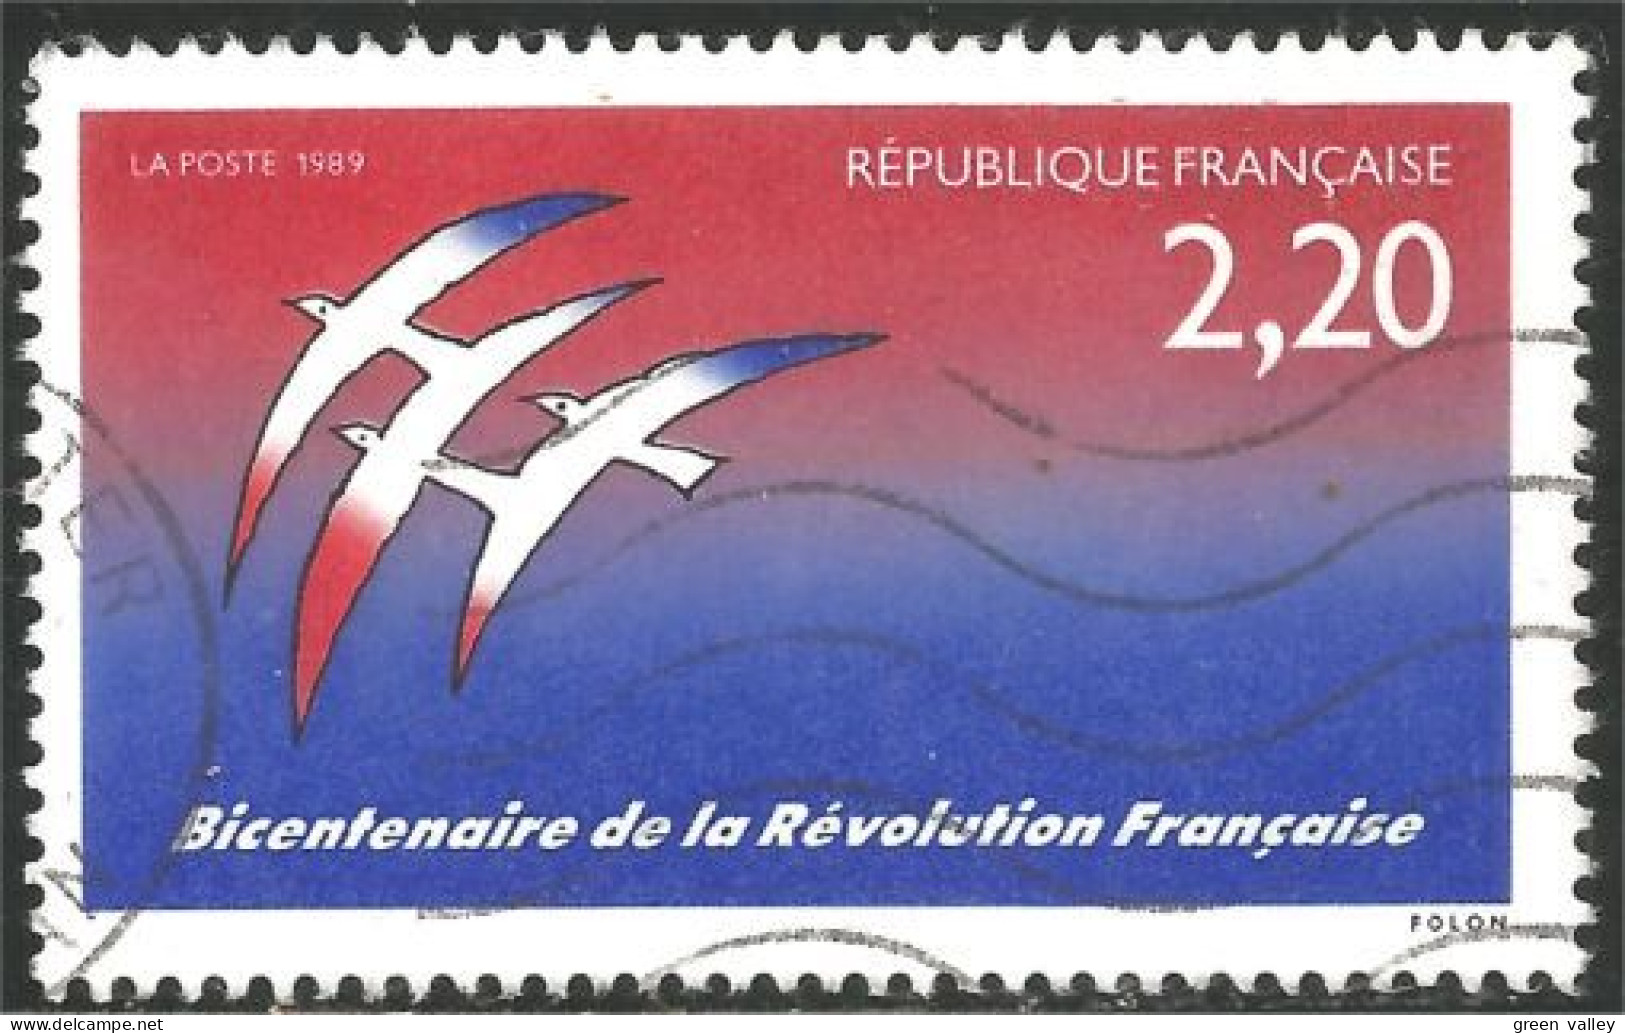 331nf-7 France Bicentenaire Révolution Française Folon - Gebraucht